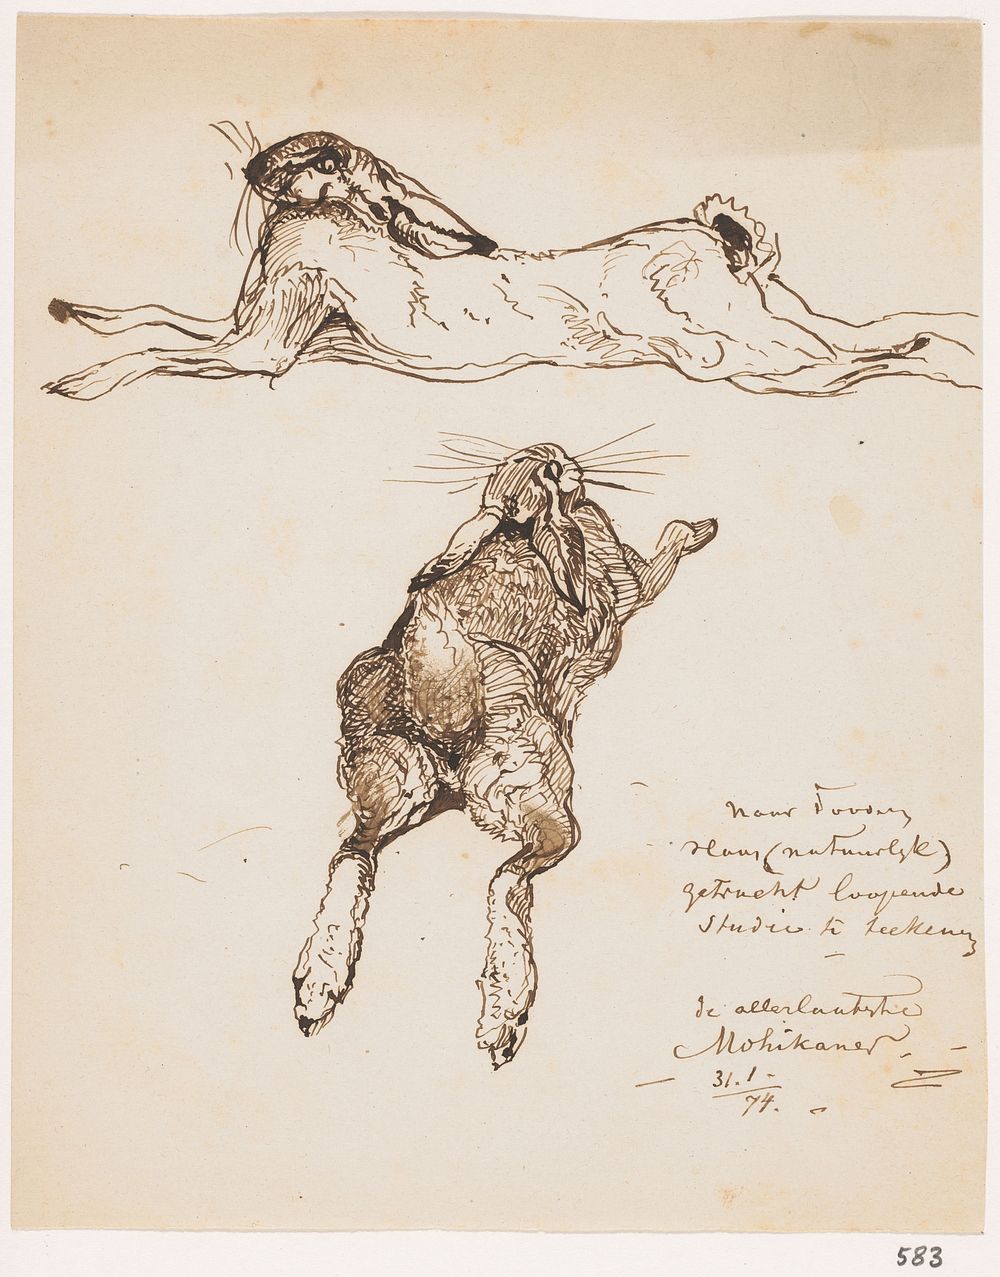 Twee studies van een dode haas (1874) by Johannes Tavenraat